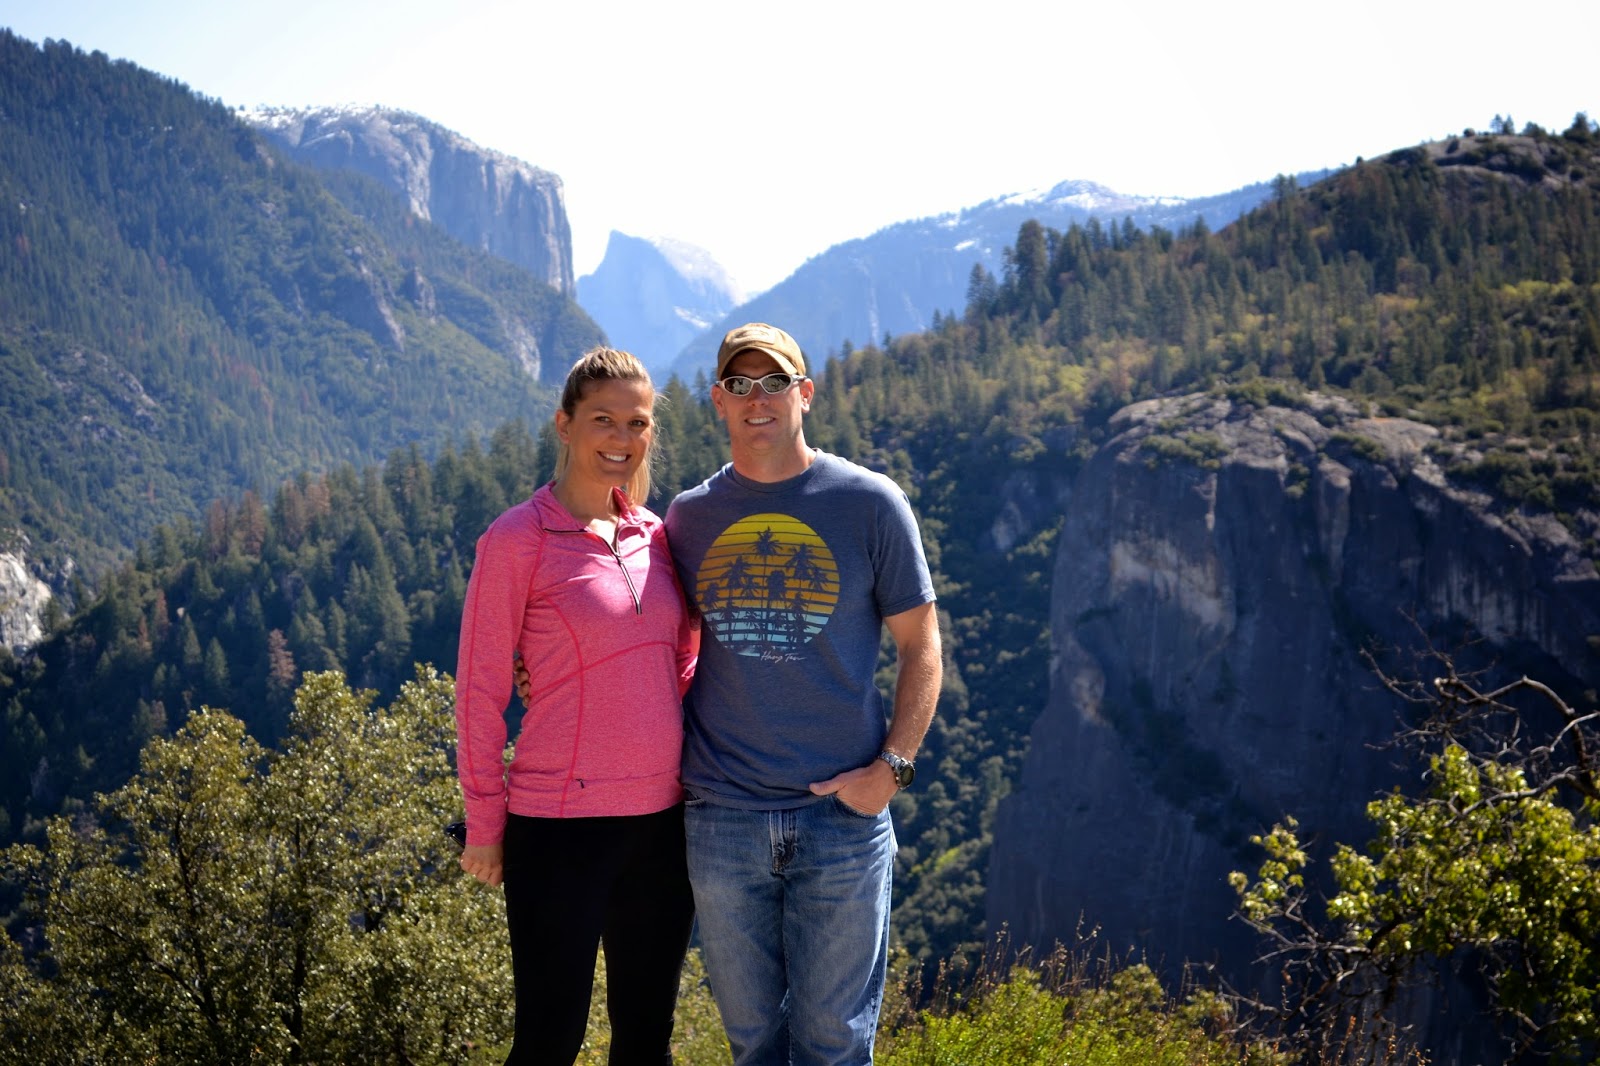 Yosemite 2015, Yosemite 49582 @iMGSRC.RU